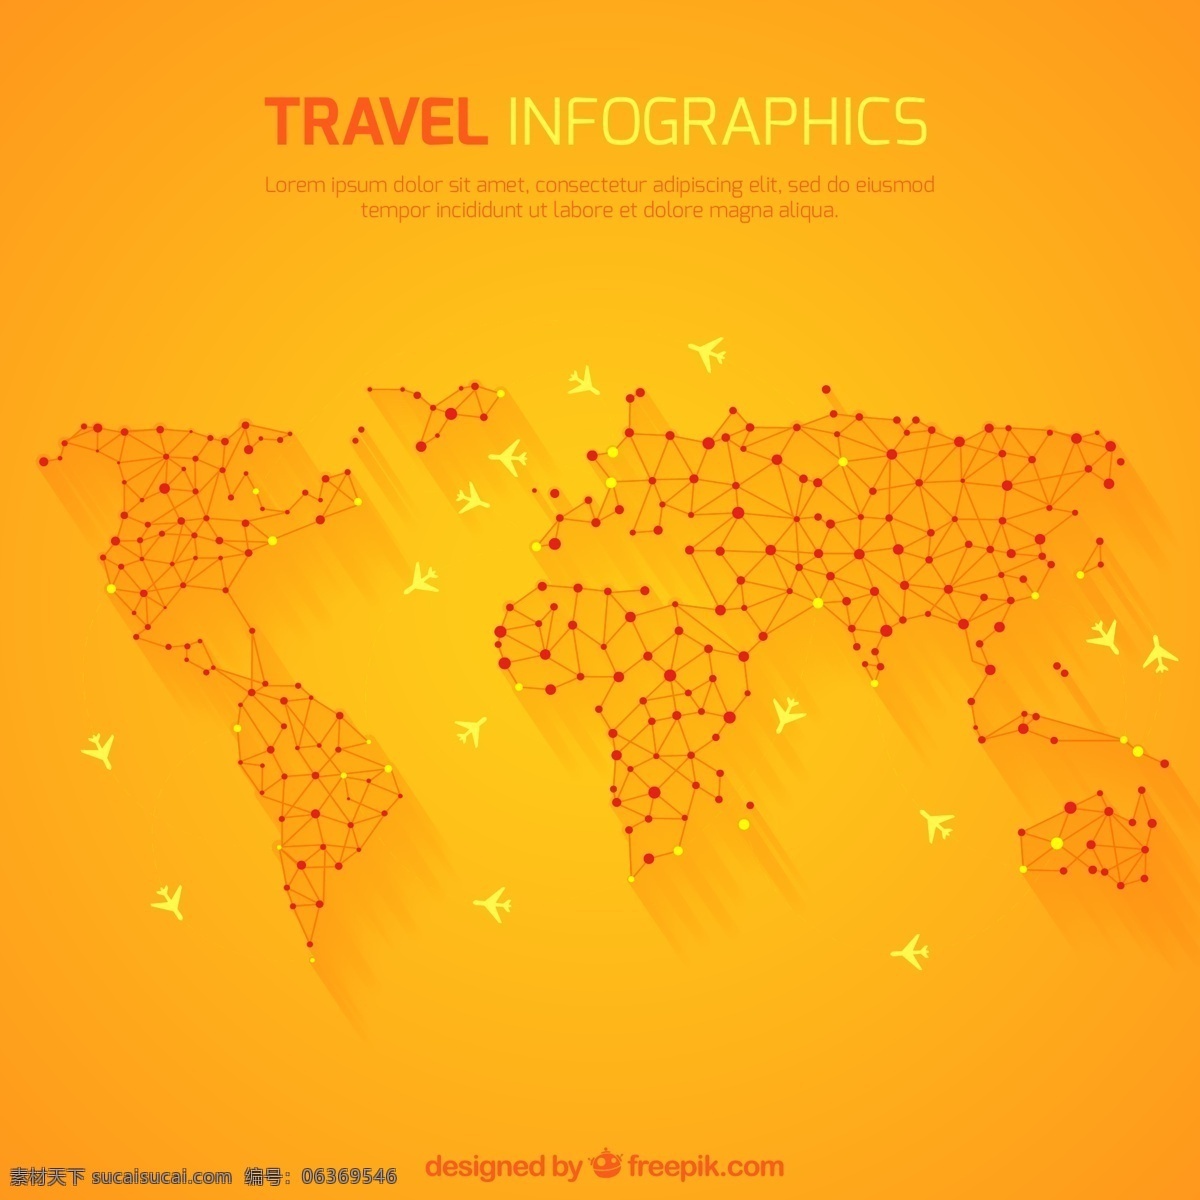 橙色 世界 旅行 地图 航线 环球 飞机 轨迹 信息图 矢量图